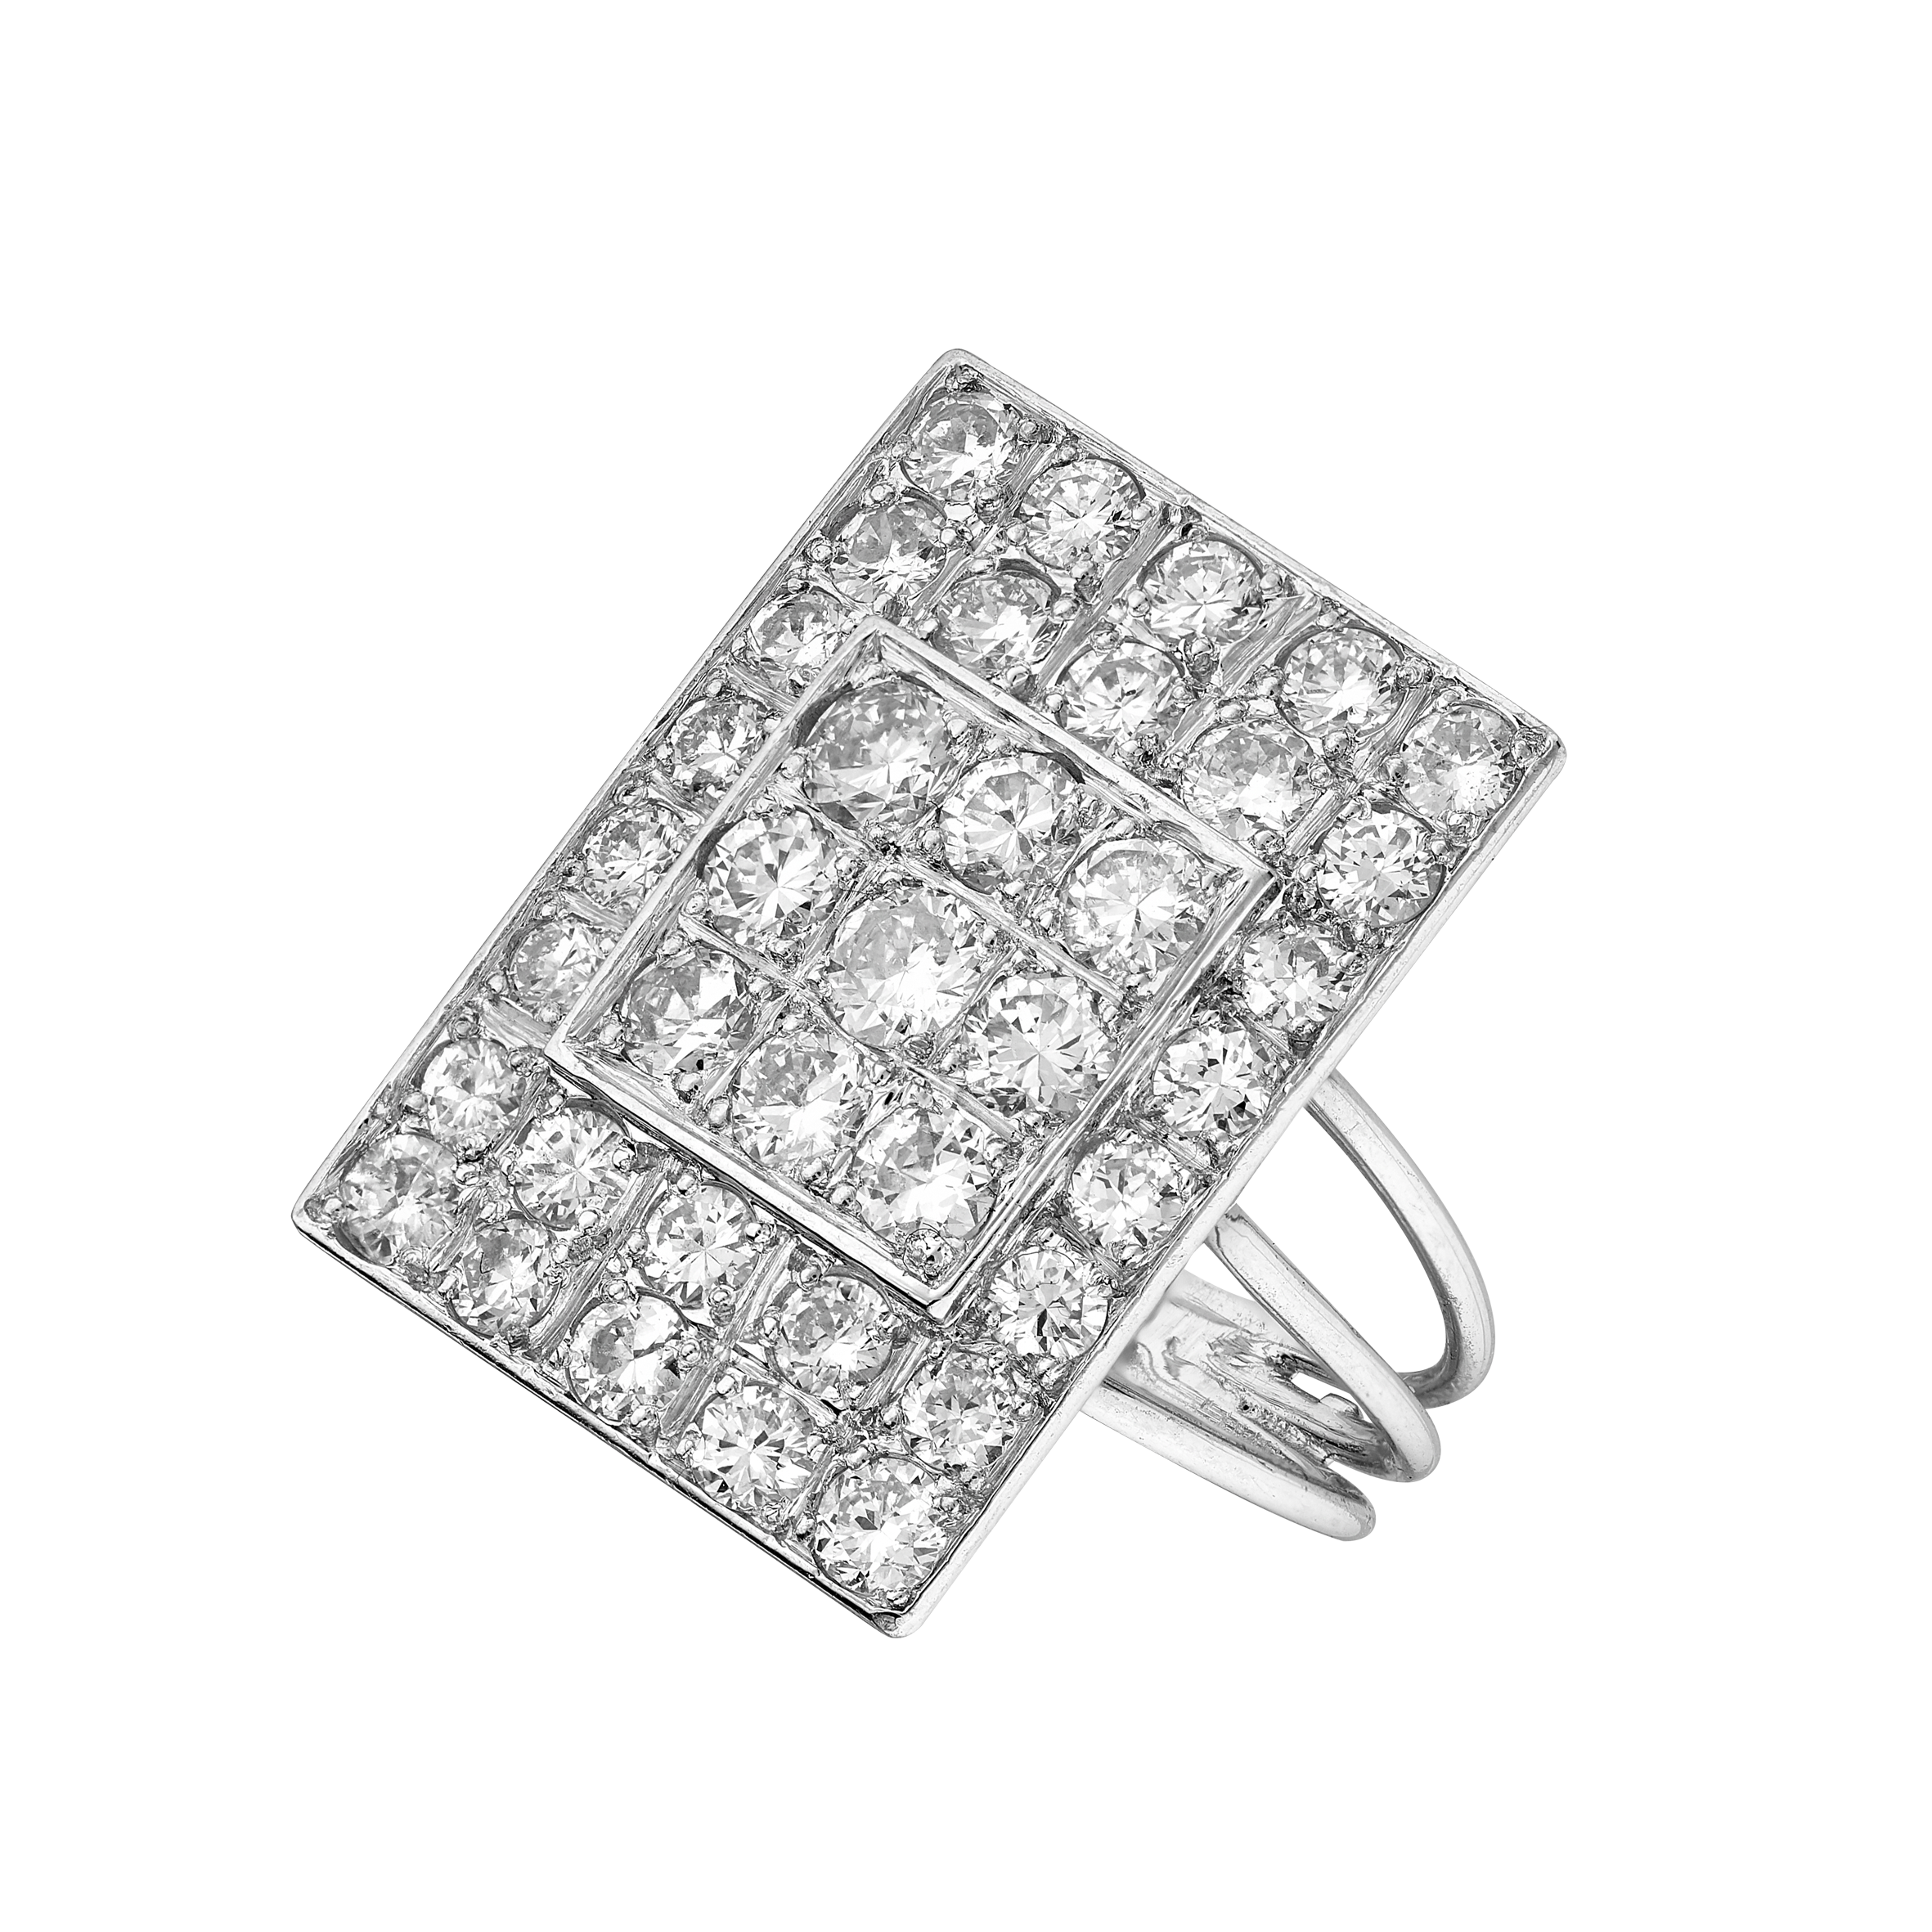 Bague rectangle pavée diamants vers 1950 Gerphagnon